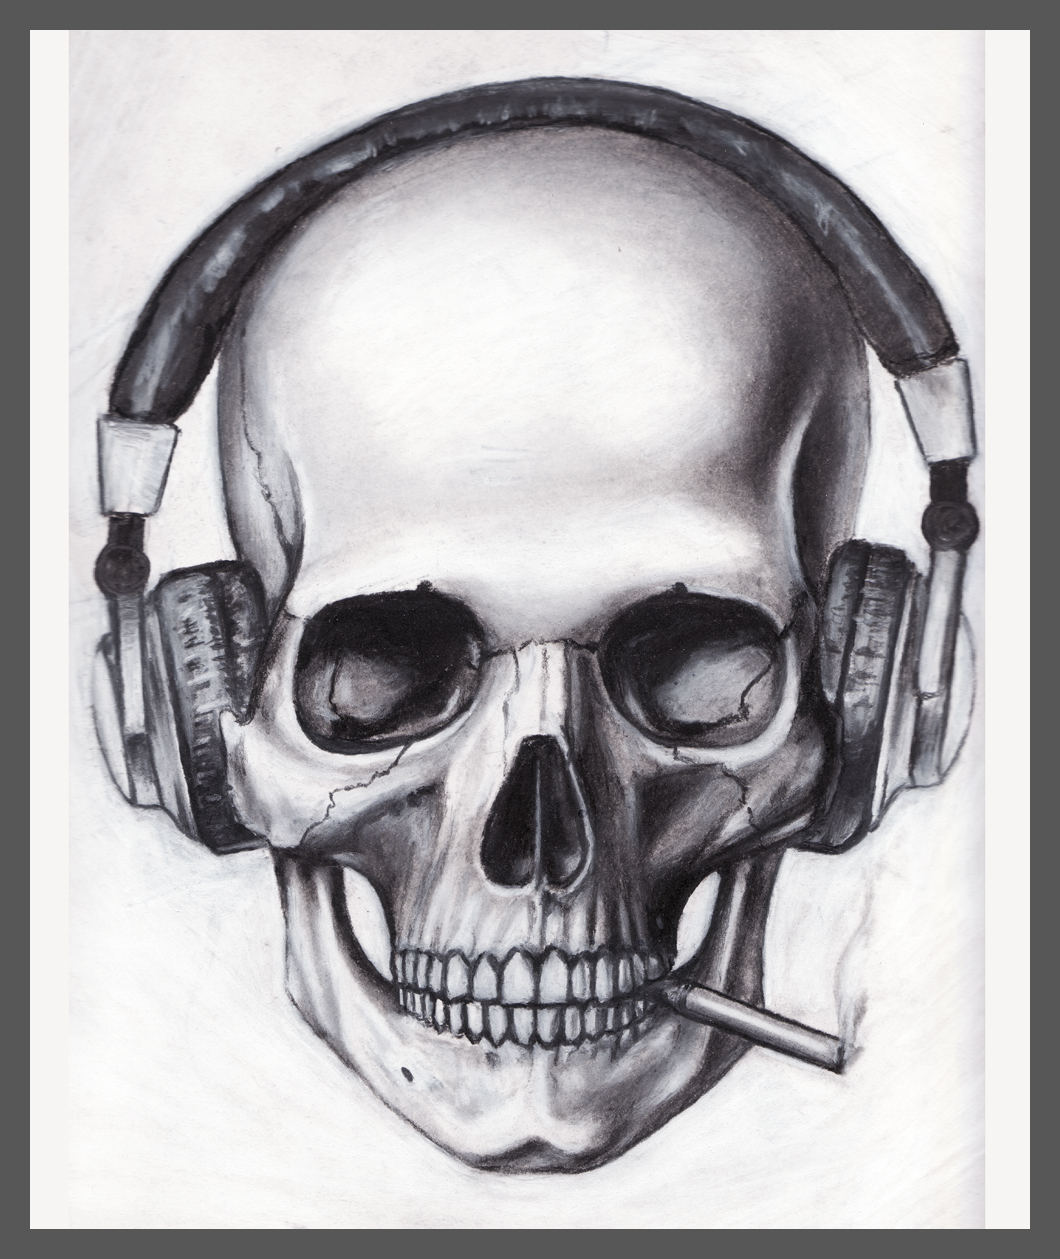 Skull Headphones Cigarette by pleasenojunkthanks on DeviantArt